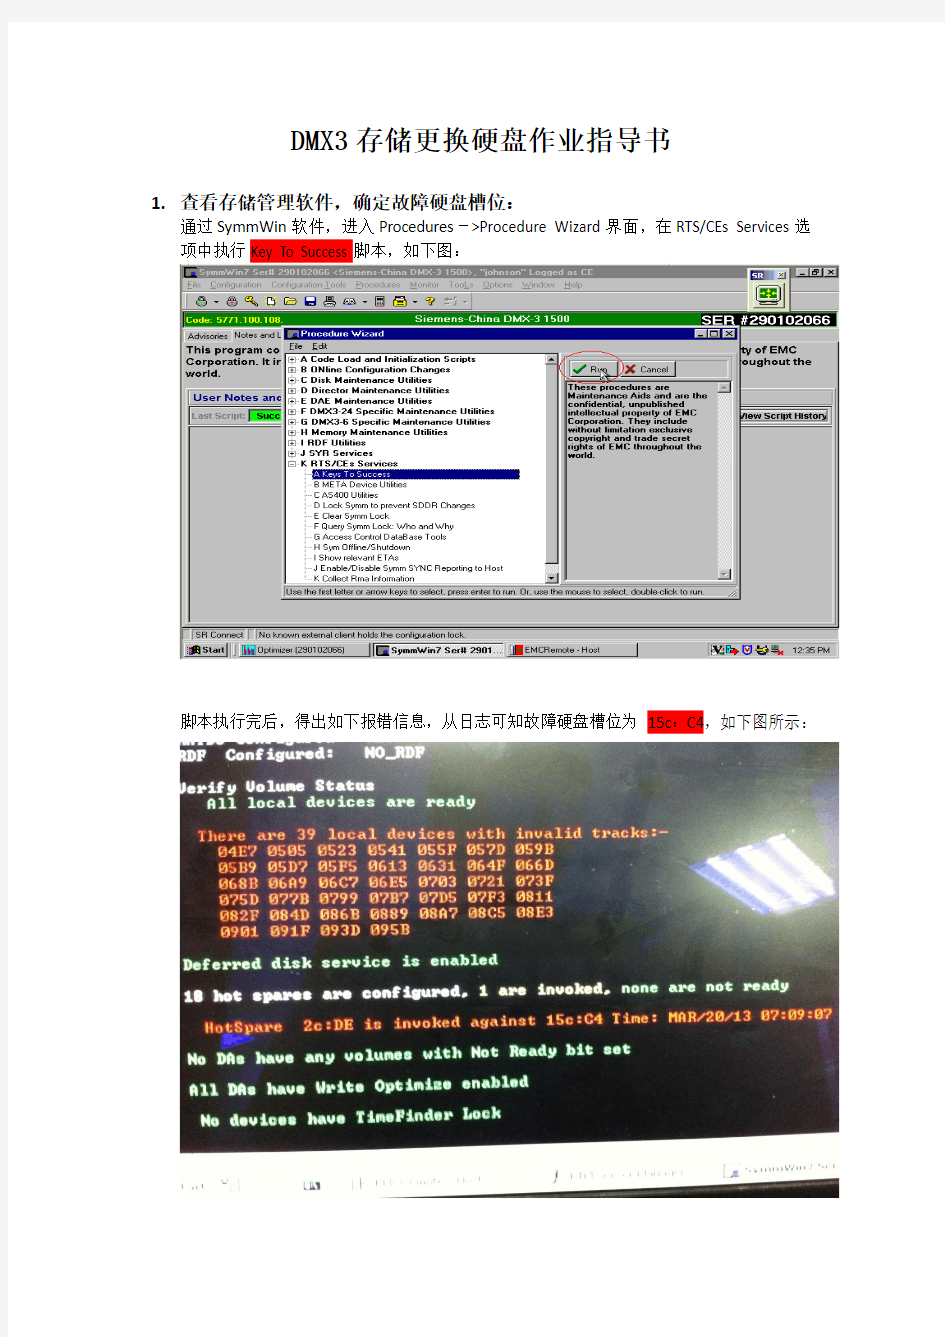 DMX3存储更换硬盘作业指导书_20130324